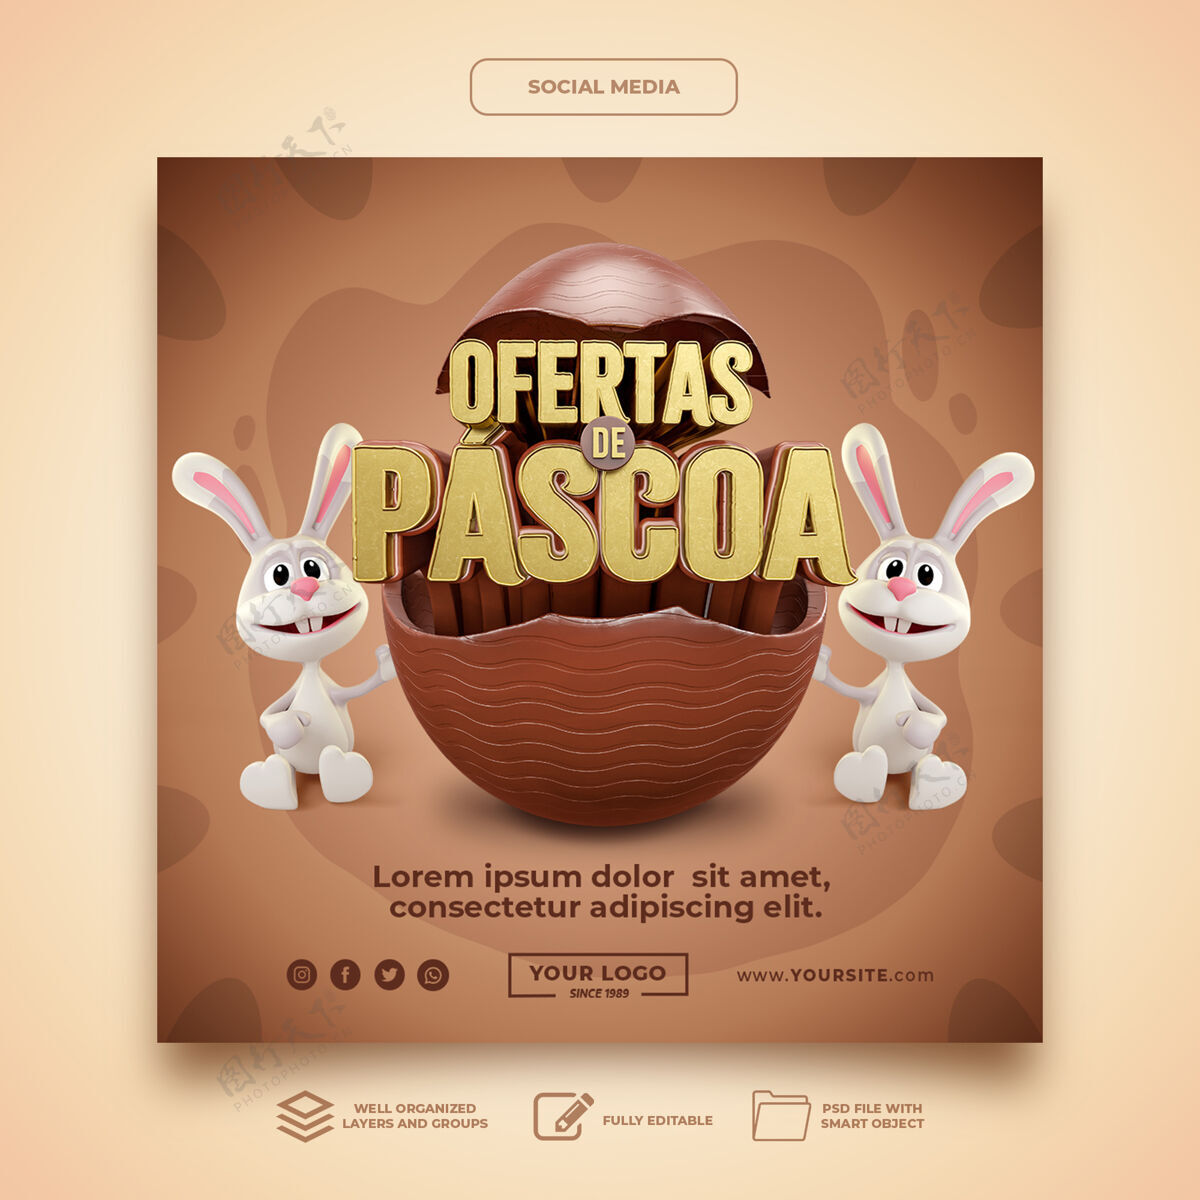 横幅社交媒体复活节提供在巴西三维渲染兔子蛋模板复活节快乐现实社交媒体